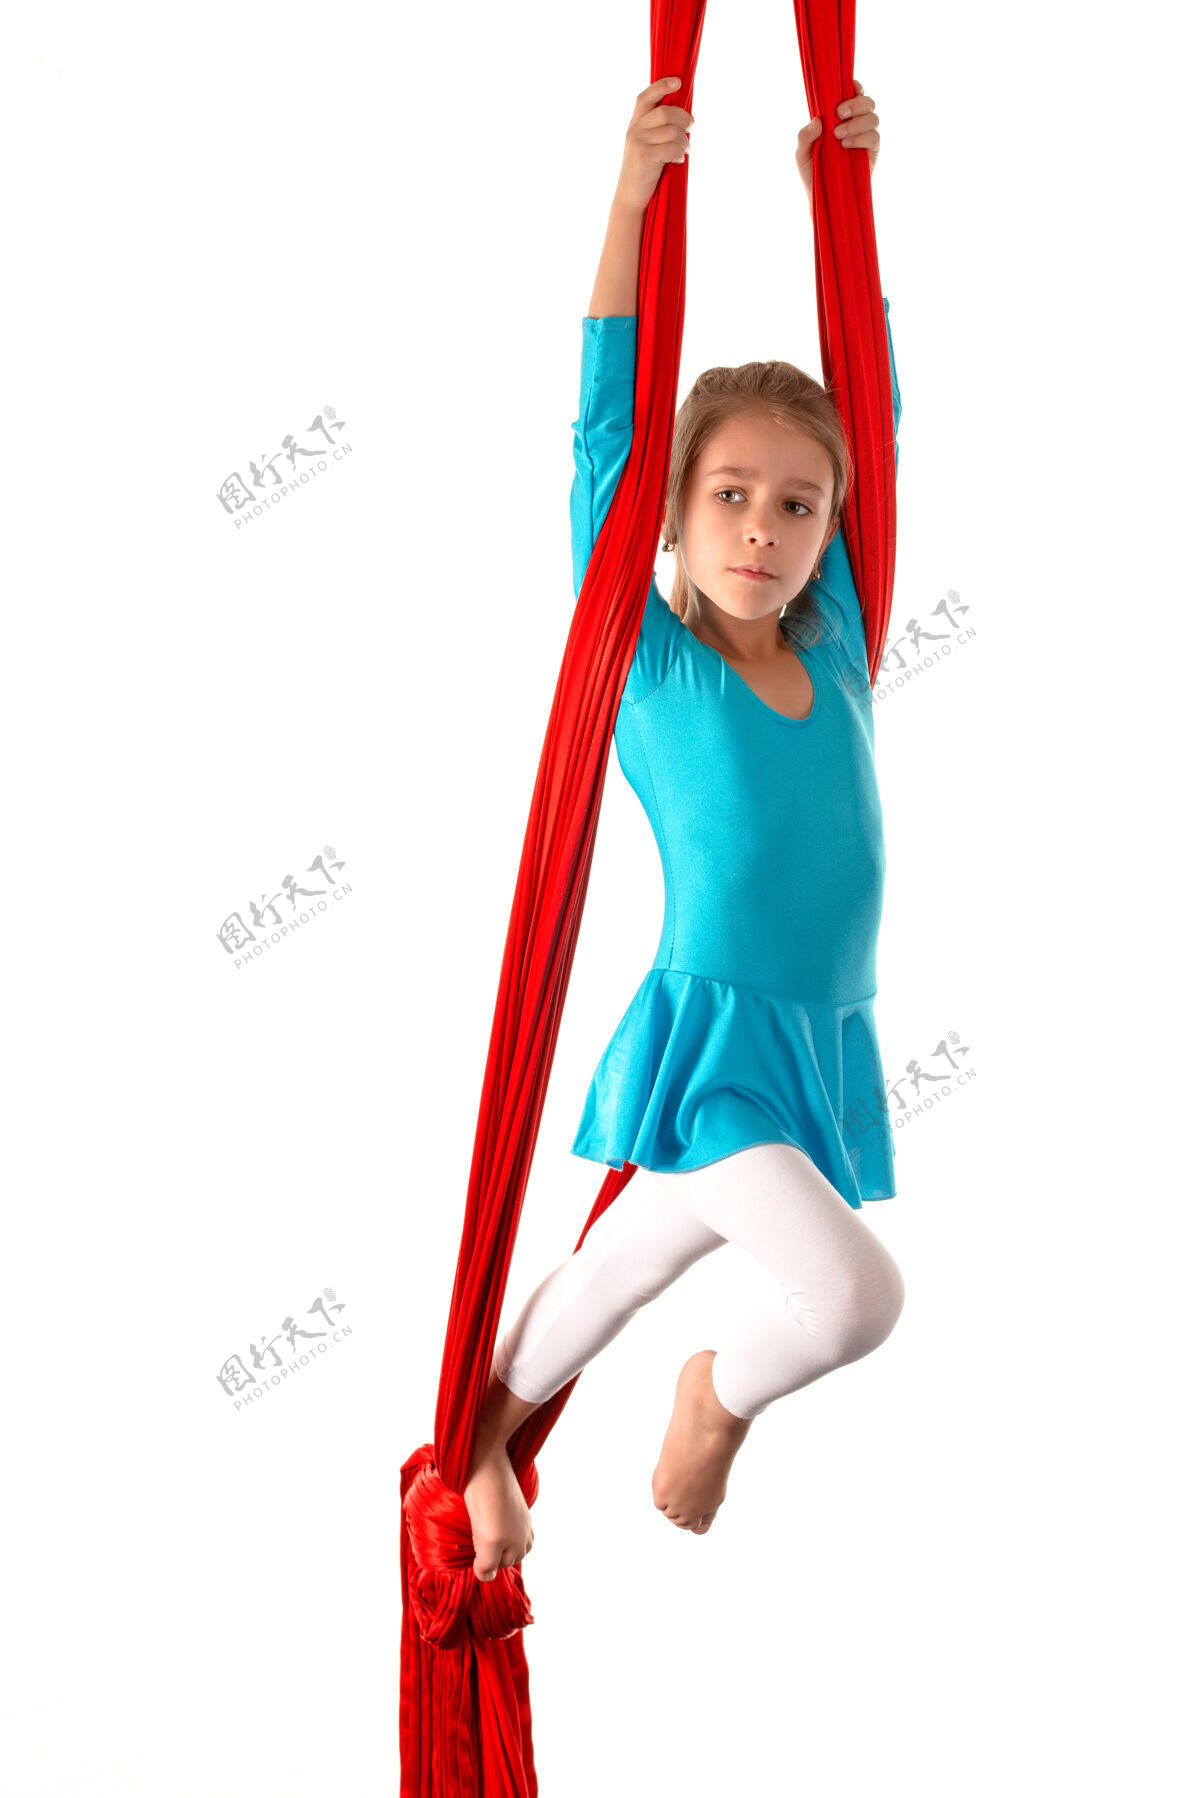 设备一个穿着蓝色泳衣的高加索小女孩 在白色沙滩上的红色飘带上做体操吊床平衡体操